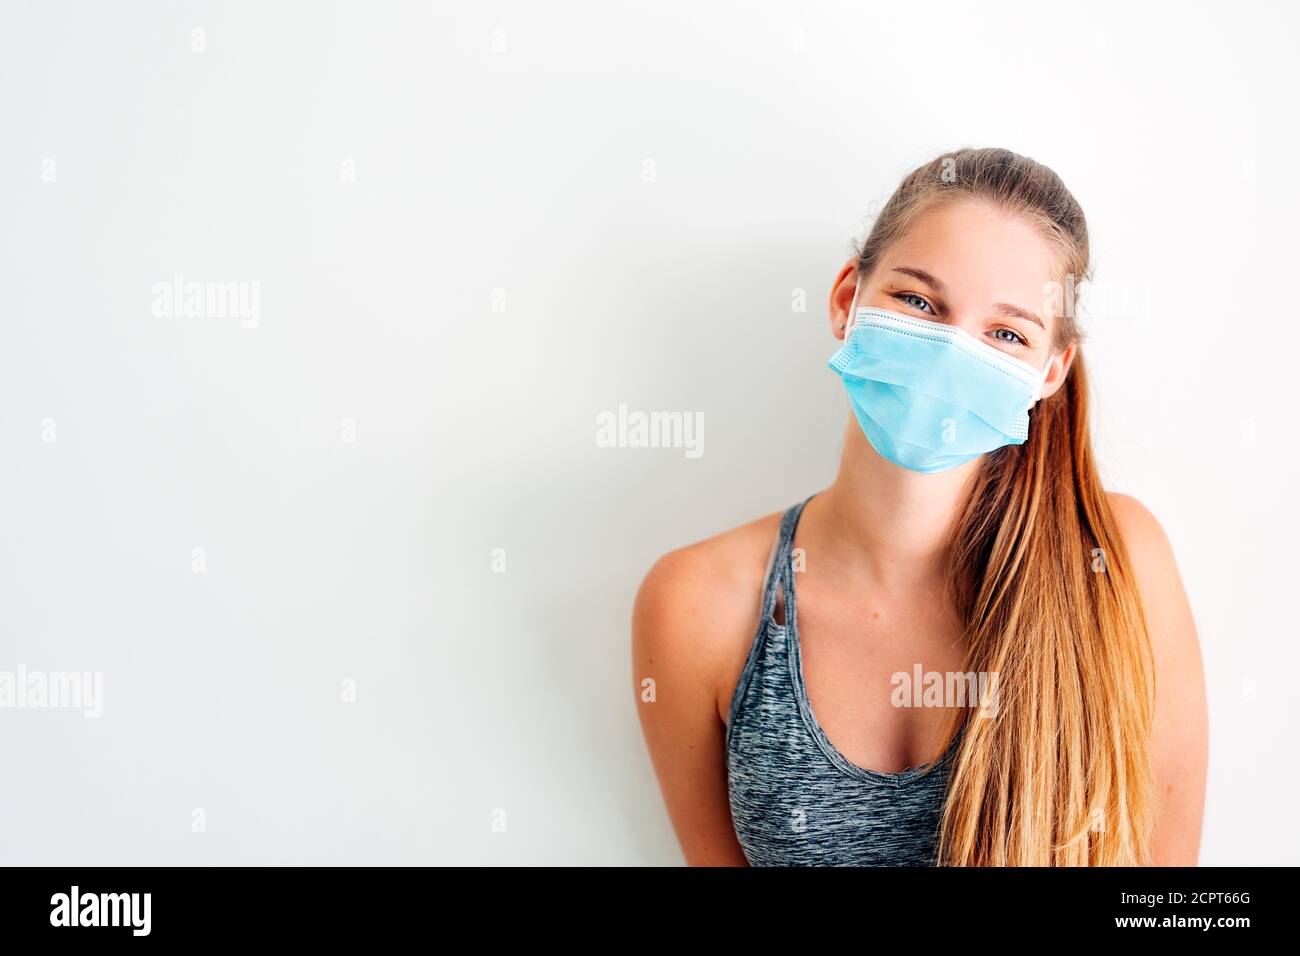 ritratto di una ragazza in abbigliamento sportivo che indossa una maschera protettiva contro virus covid con atteggiamento positivo Foto Stock